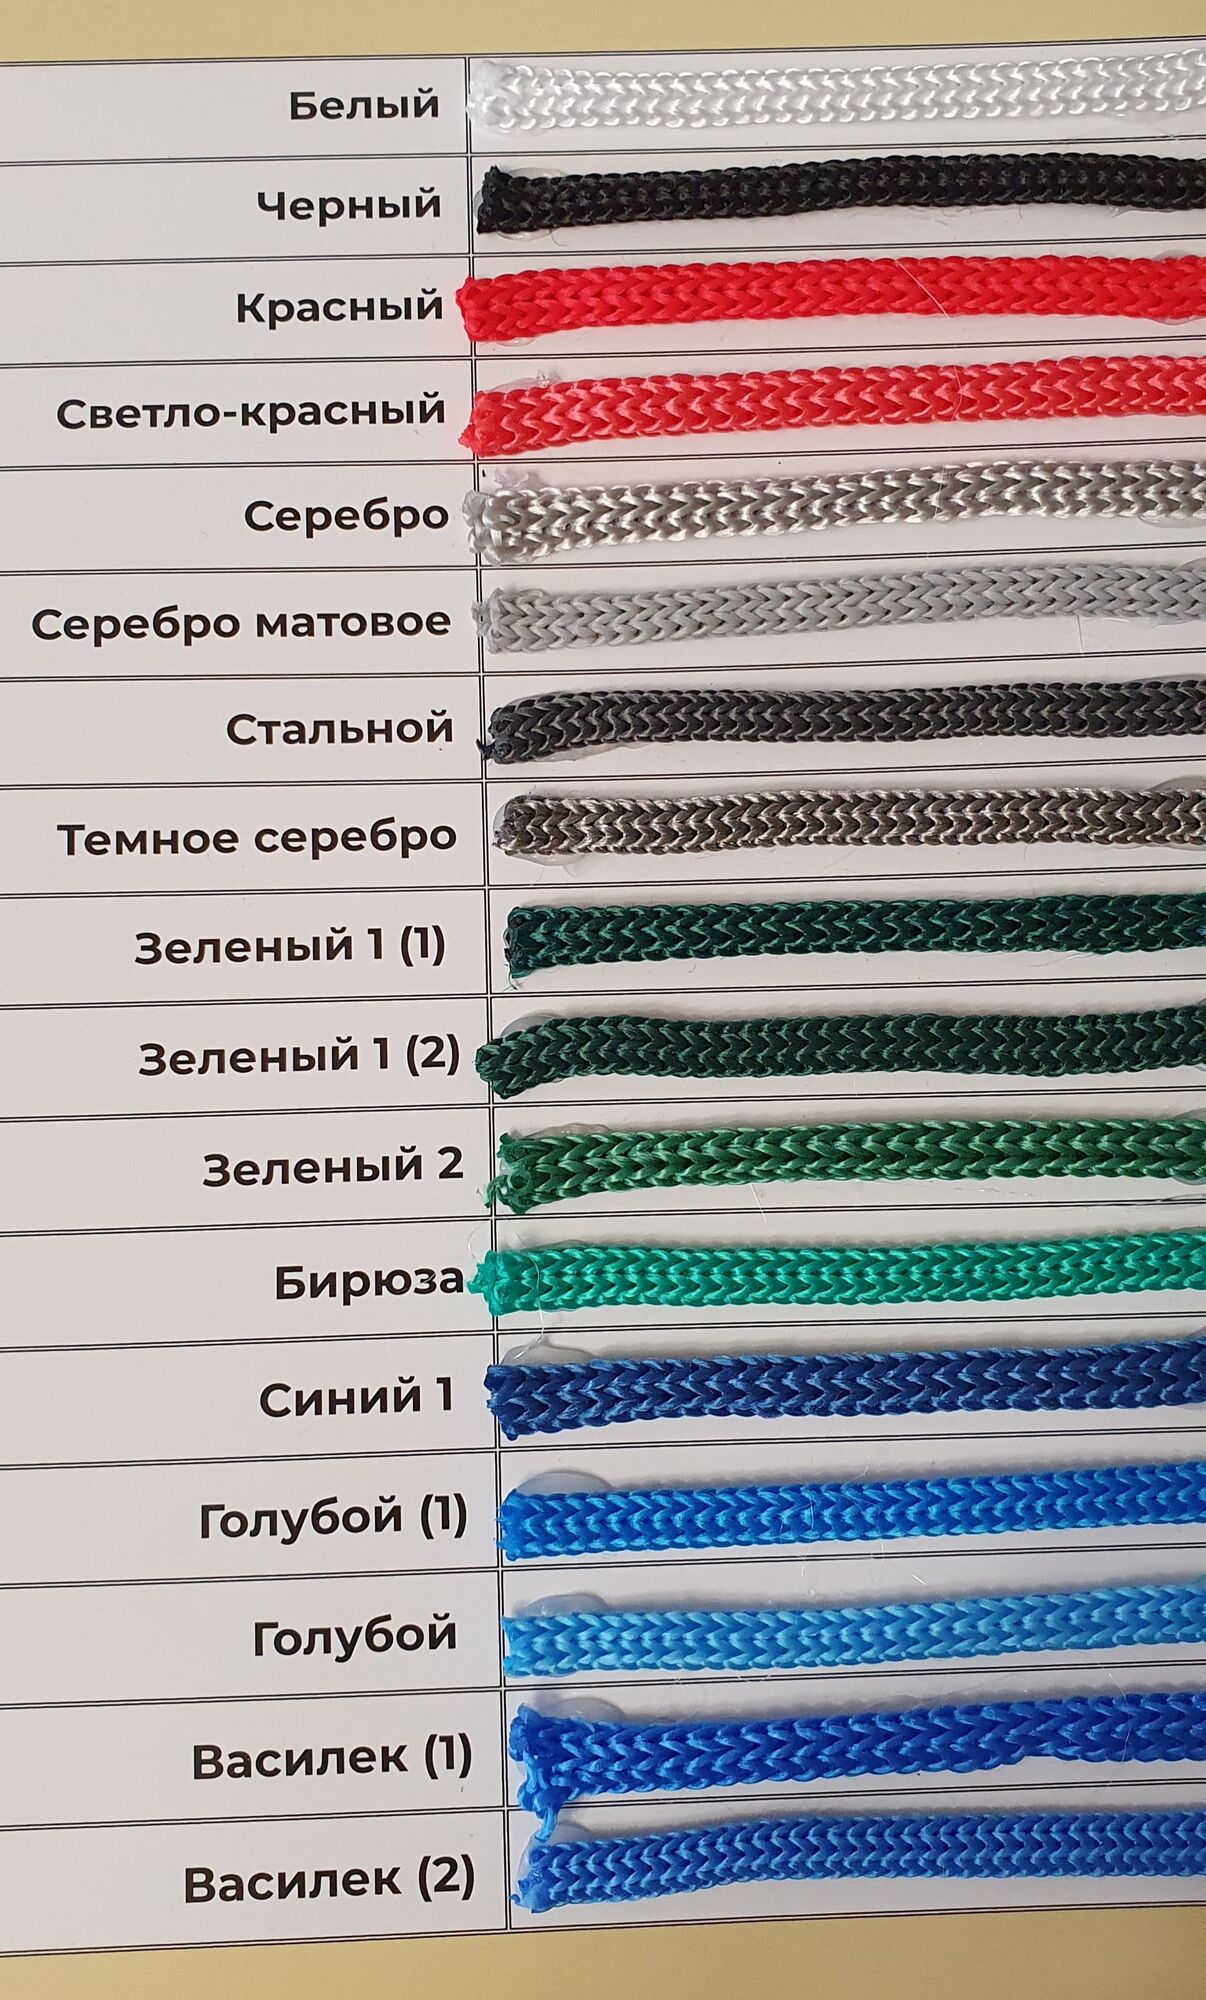 карта цветов полипропиленового шнура 5